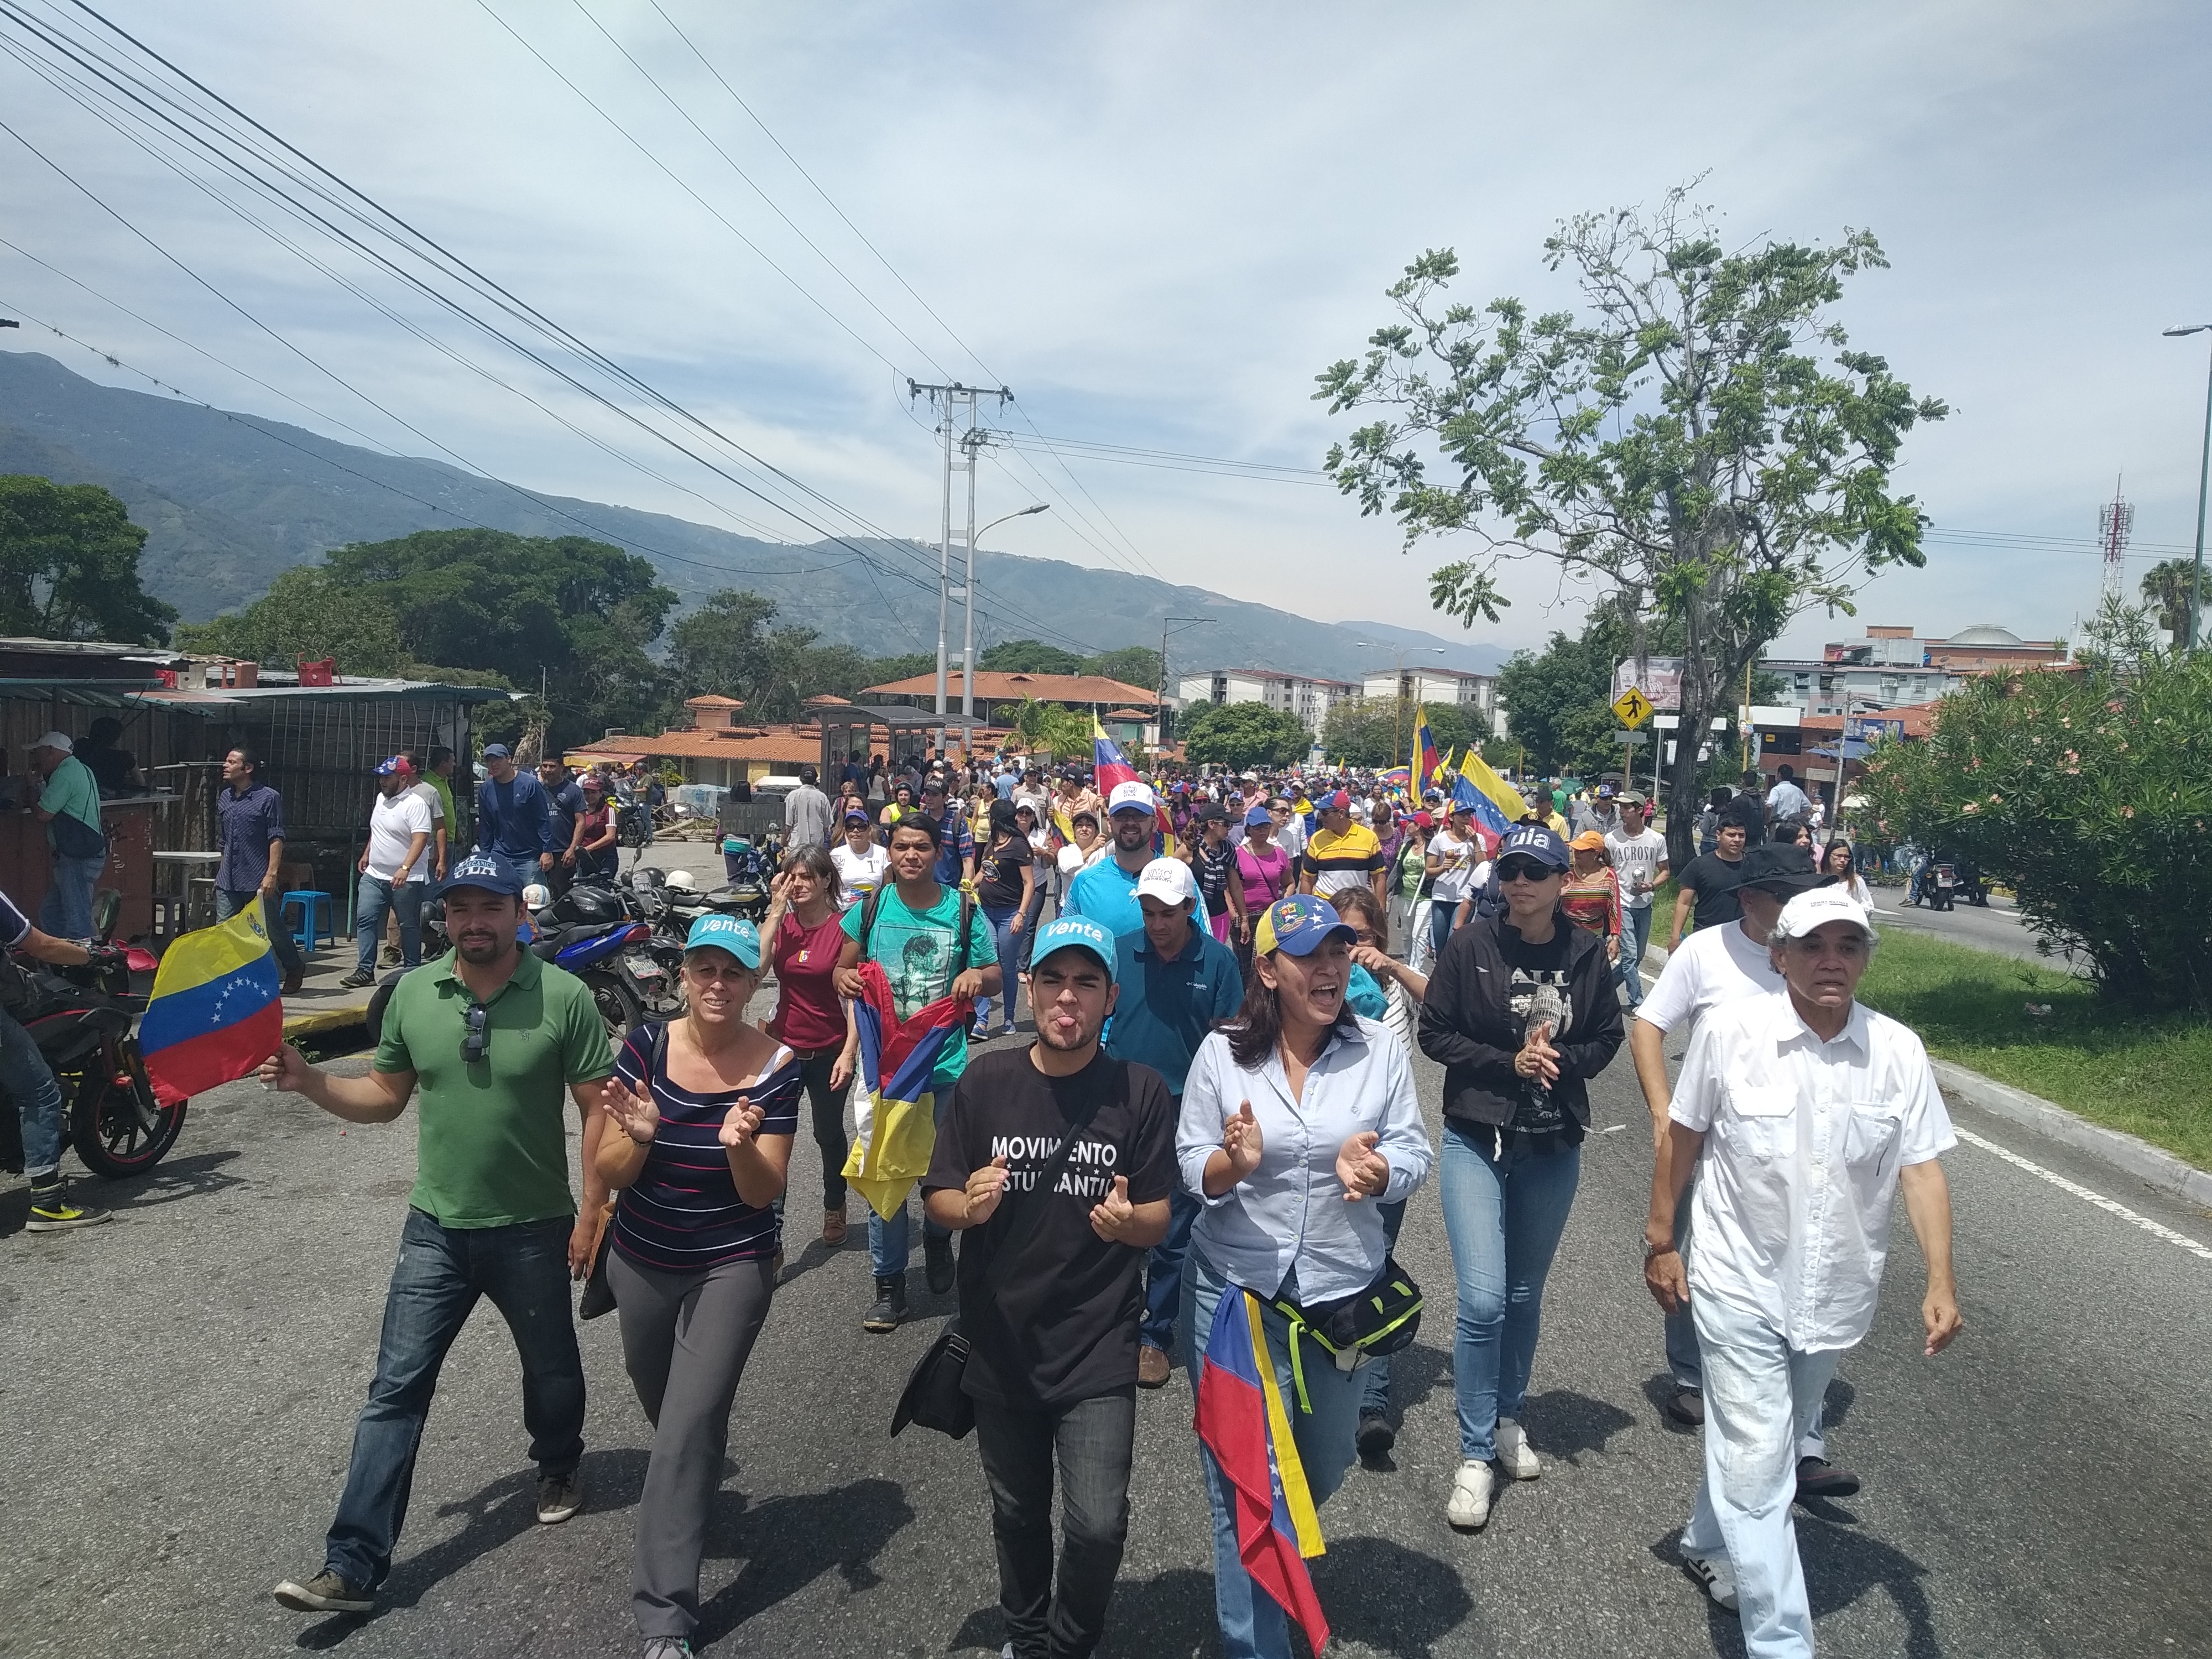 Vente Mérida: Esta gesta libertaria es en defensa de la familia, el patrimonio y la libertad